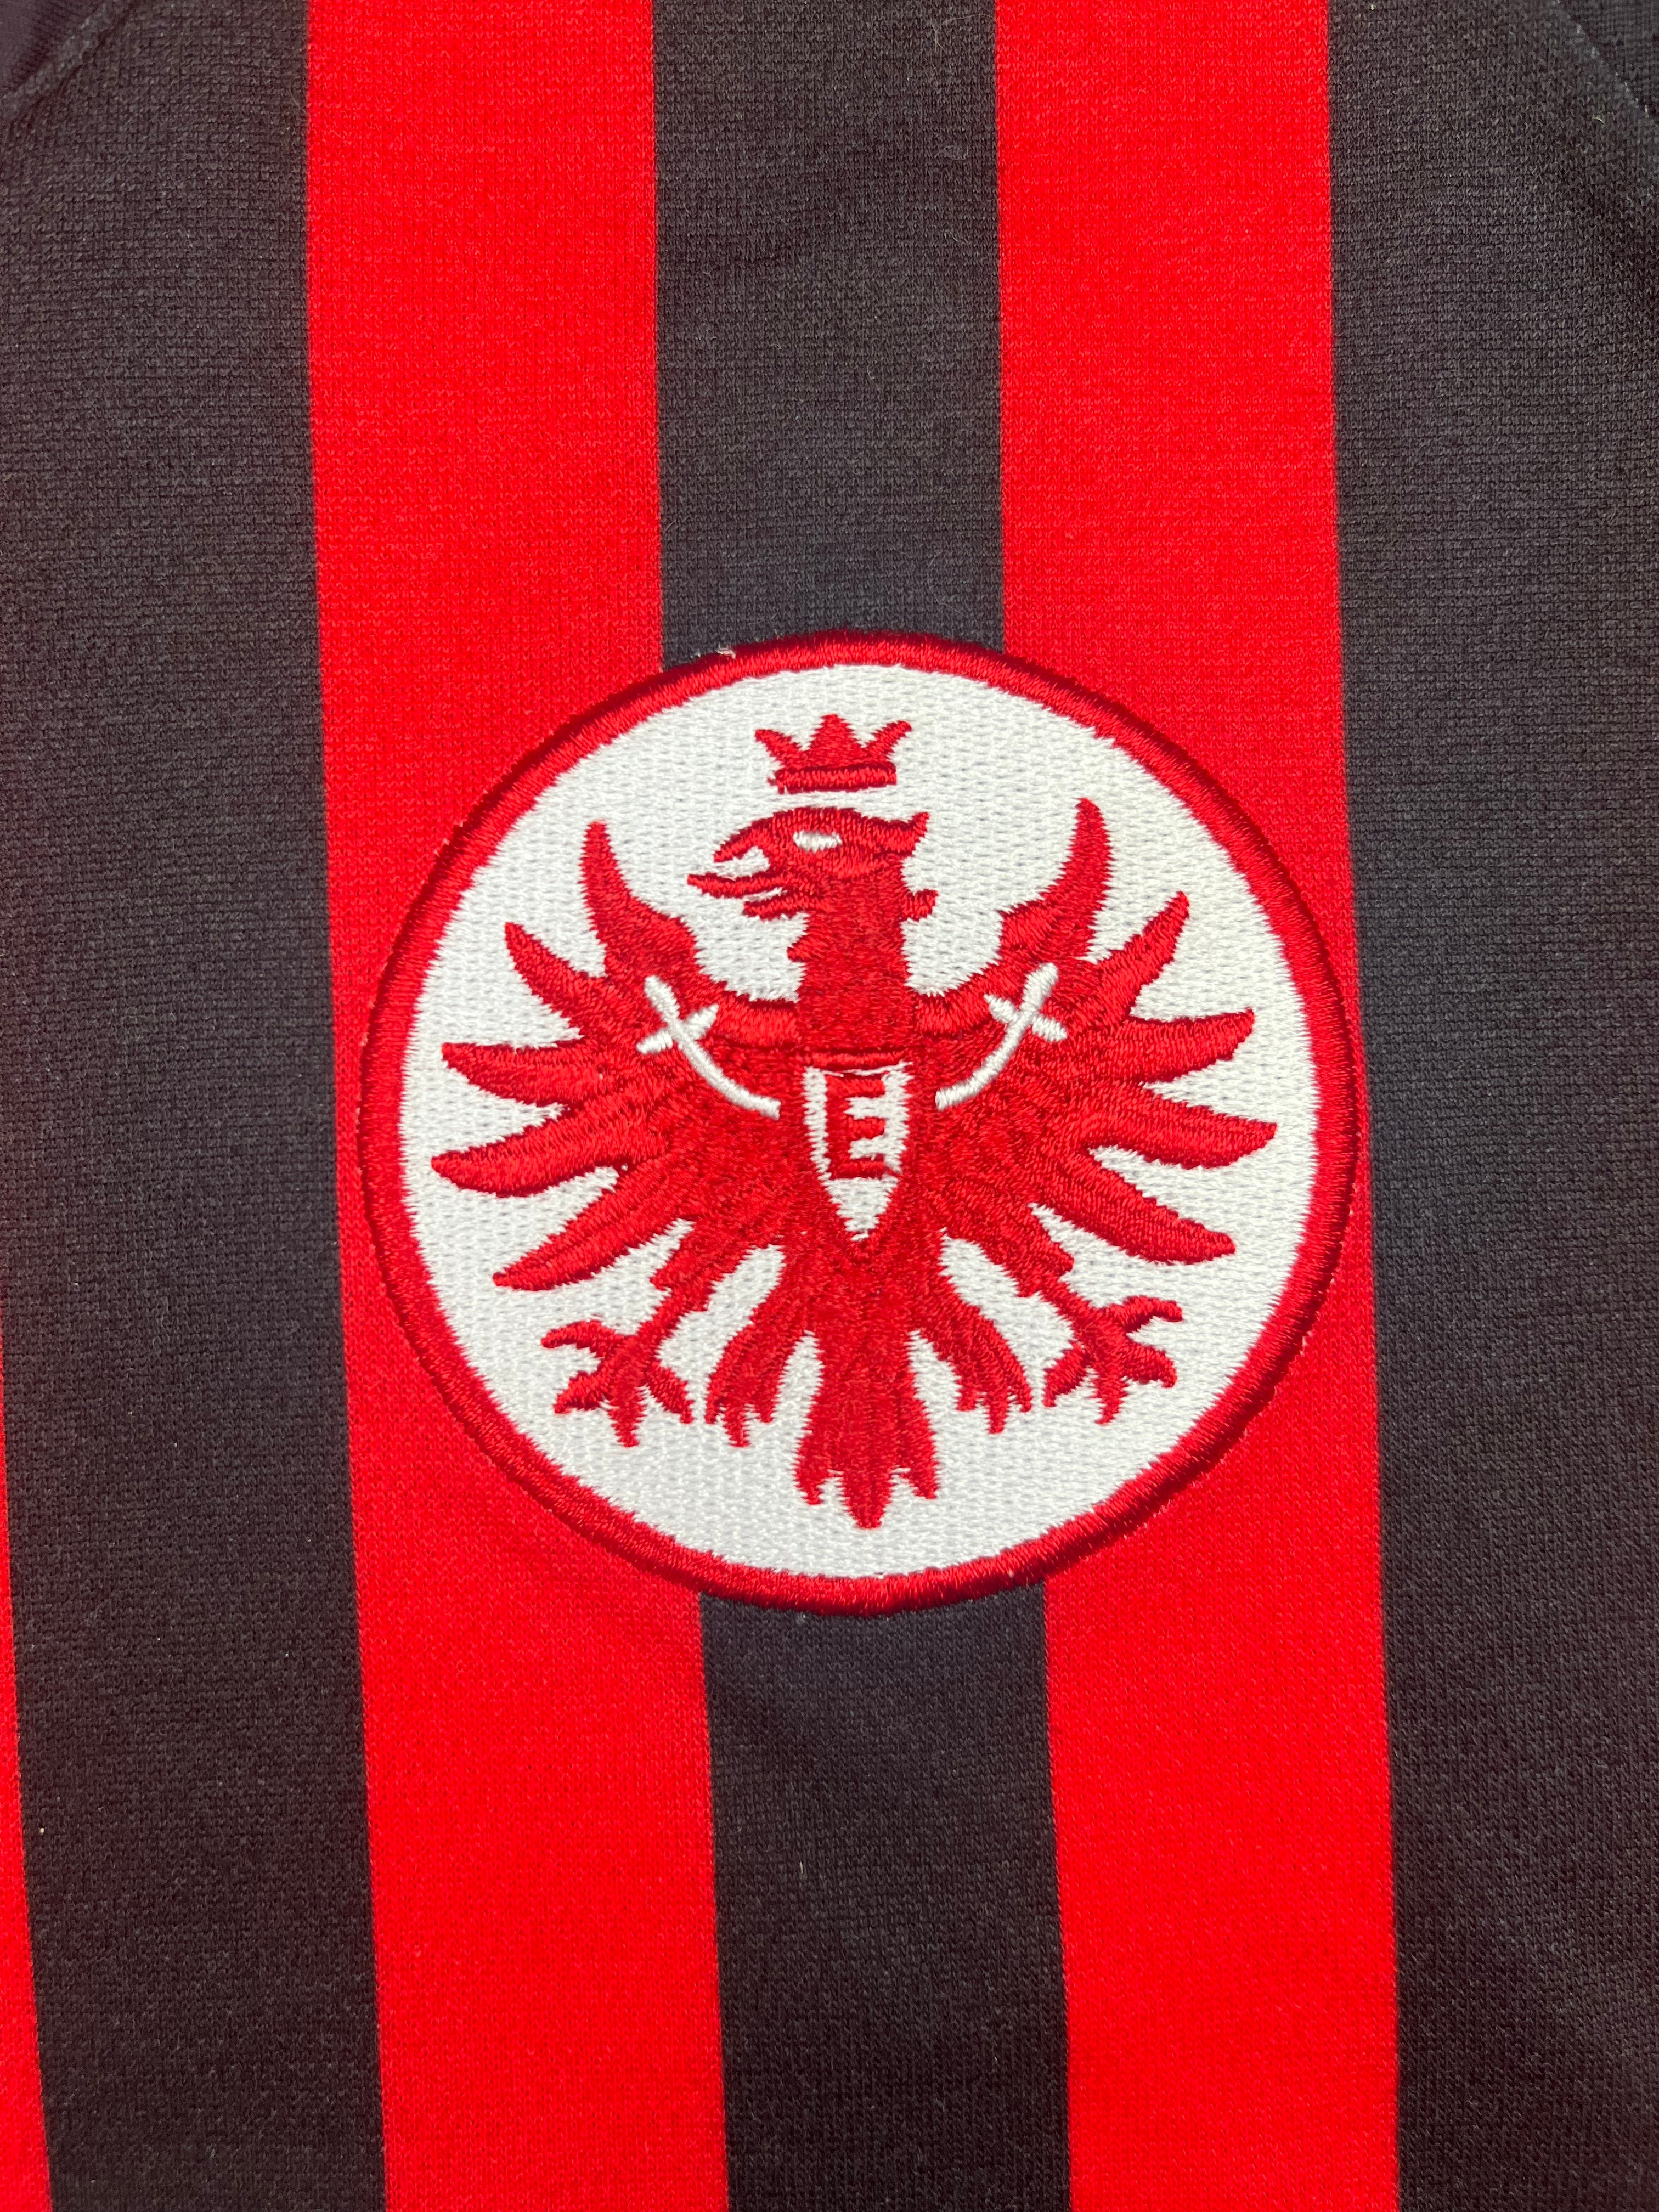 Camiseta de local del Eintracht Frankfurt 2012/13 (M) 9/10